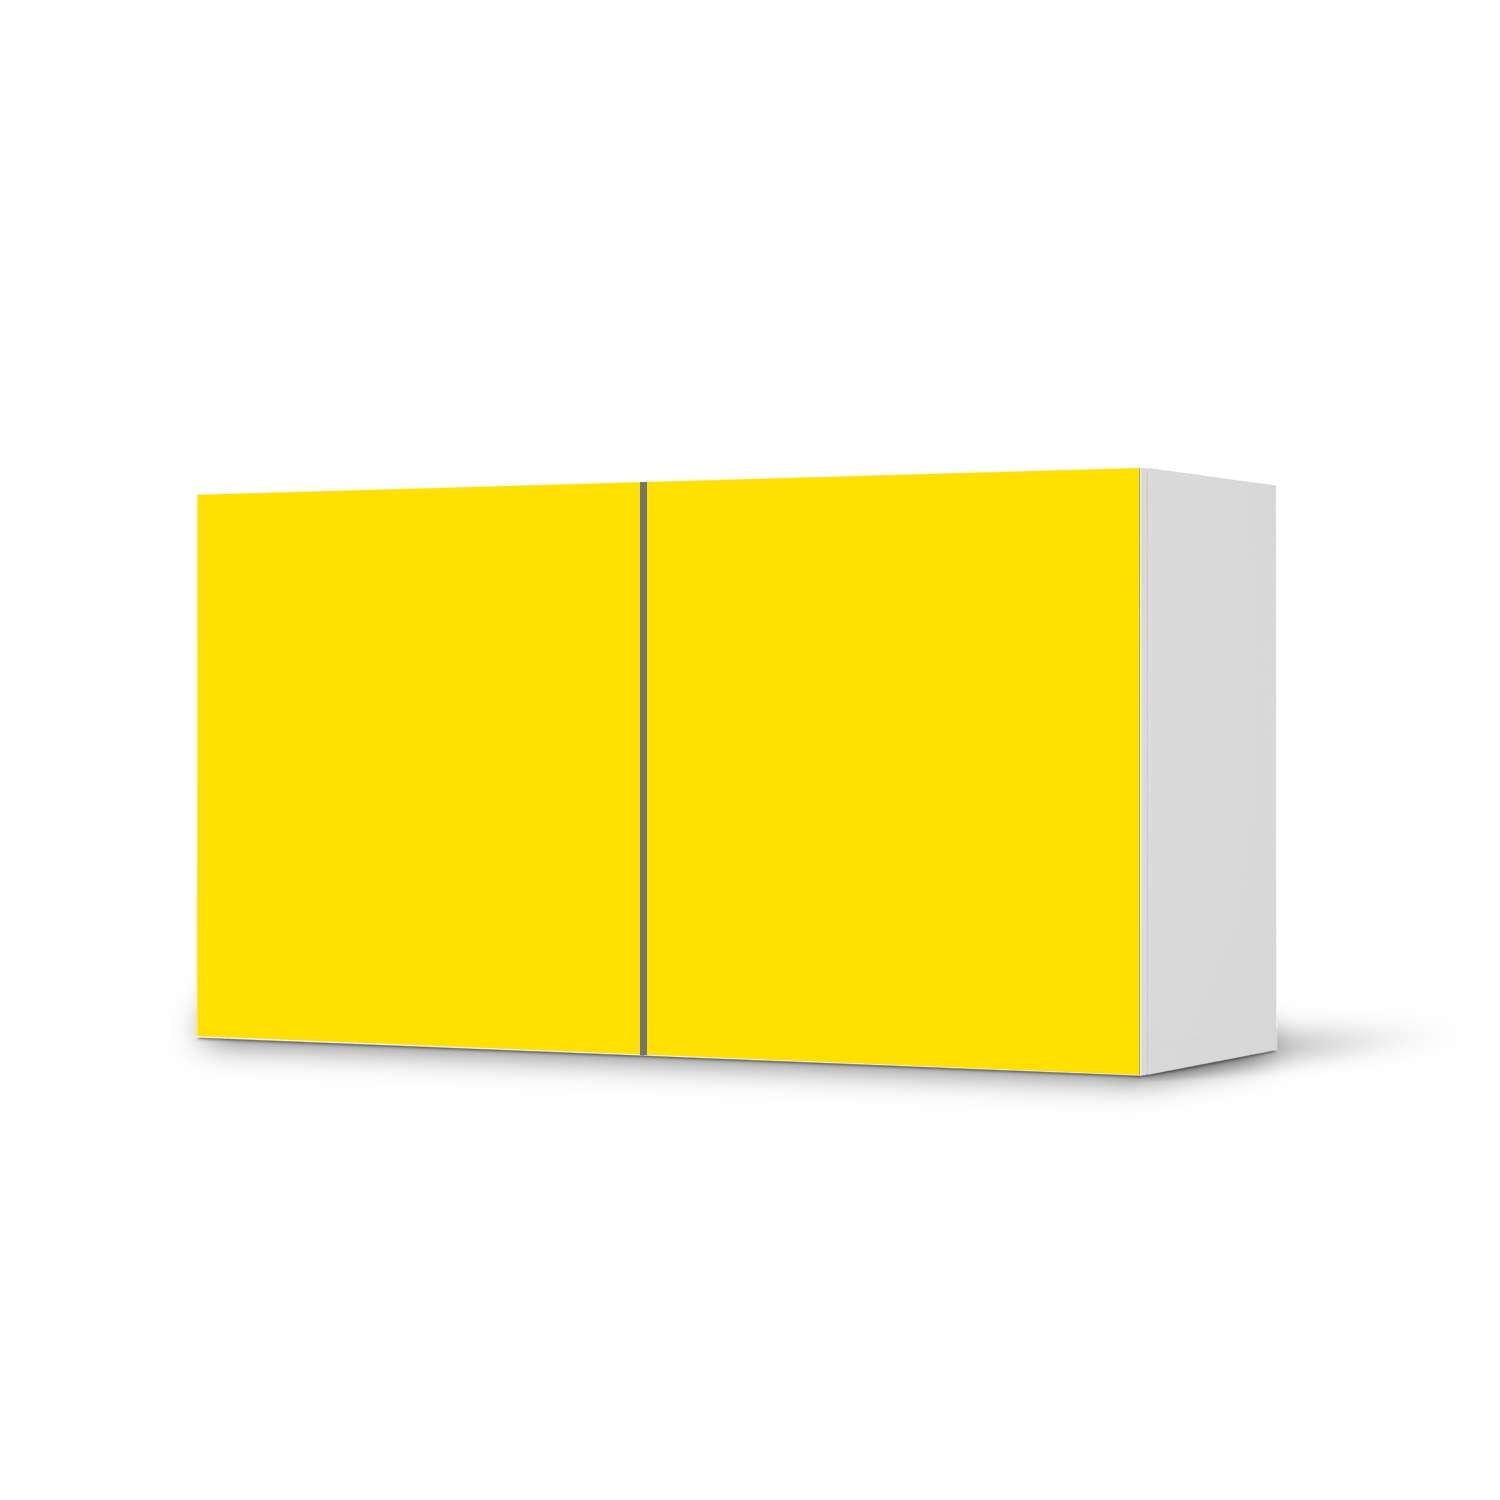 Folie f?r M?bel IKEA Besta Regal 2 T?ren (quer) - Design: Gelb Dark von creatisto